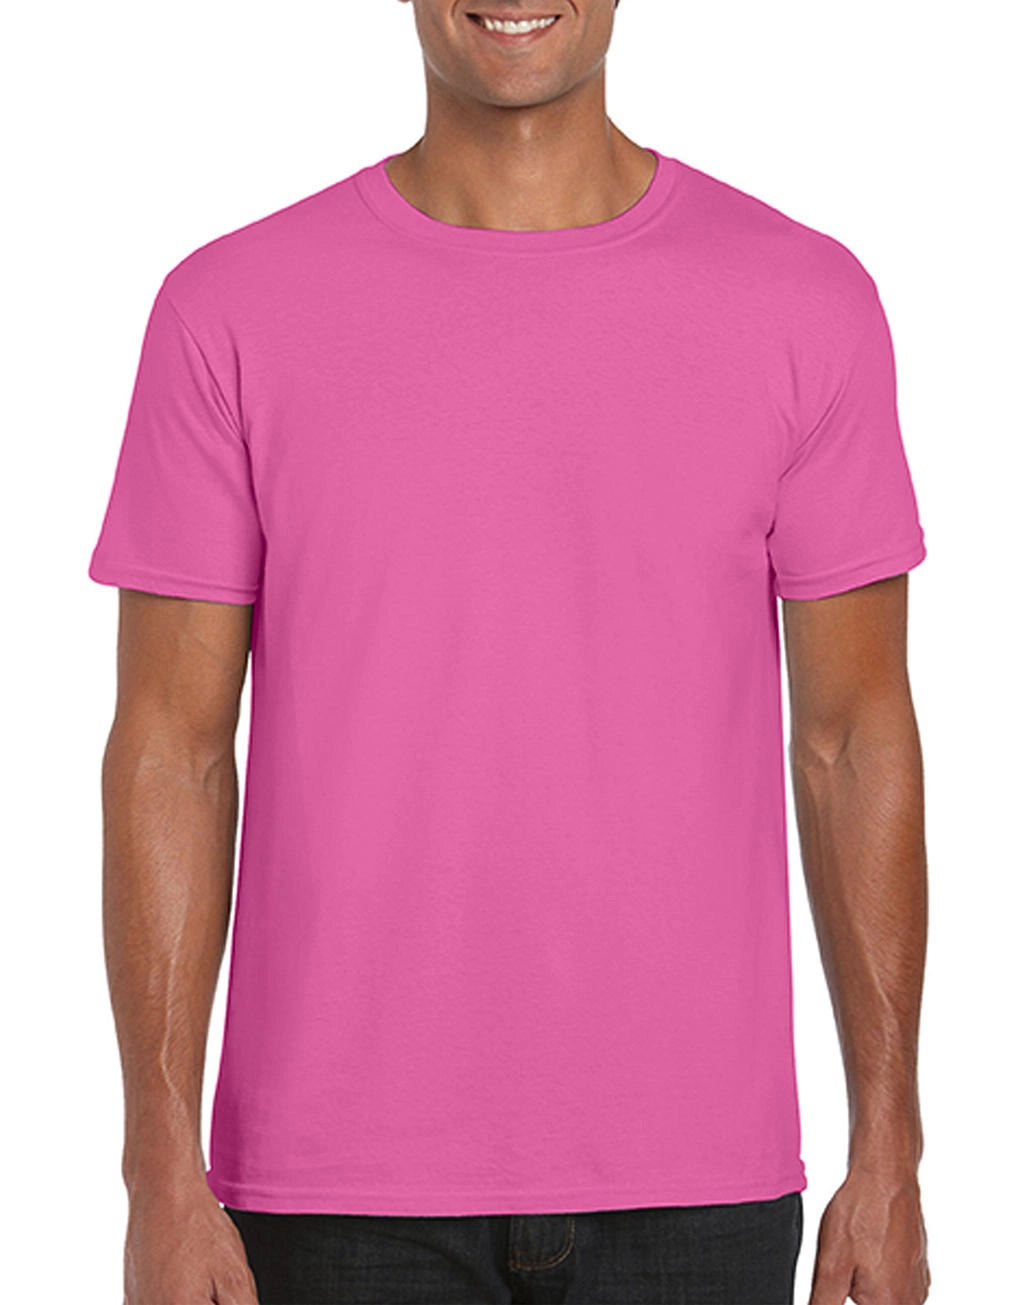 Softstyle® Ring Spun T-Shirt zum Besticken und Bedrucken in der Farbe Azalea mit Ihren Logo, Schriftzug oder Motiv.